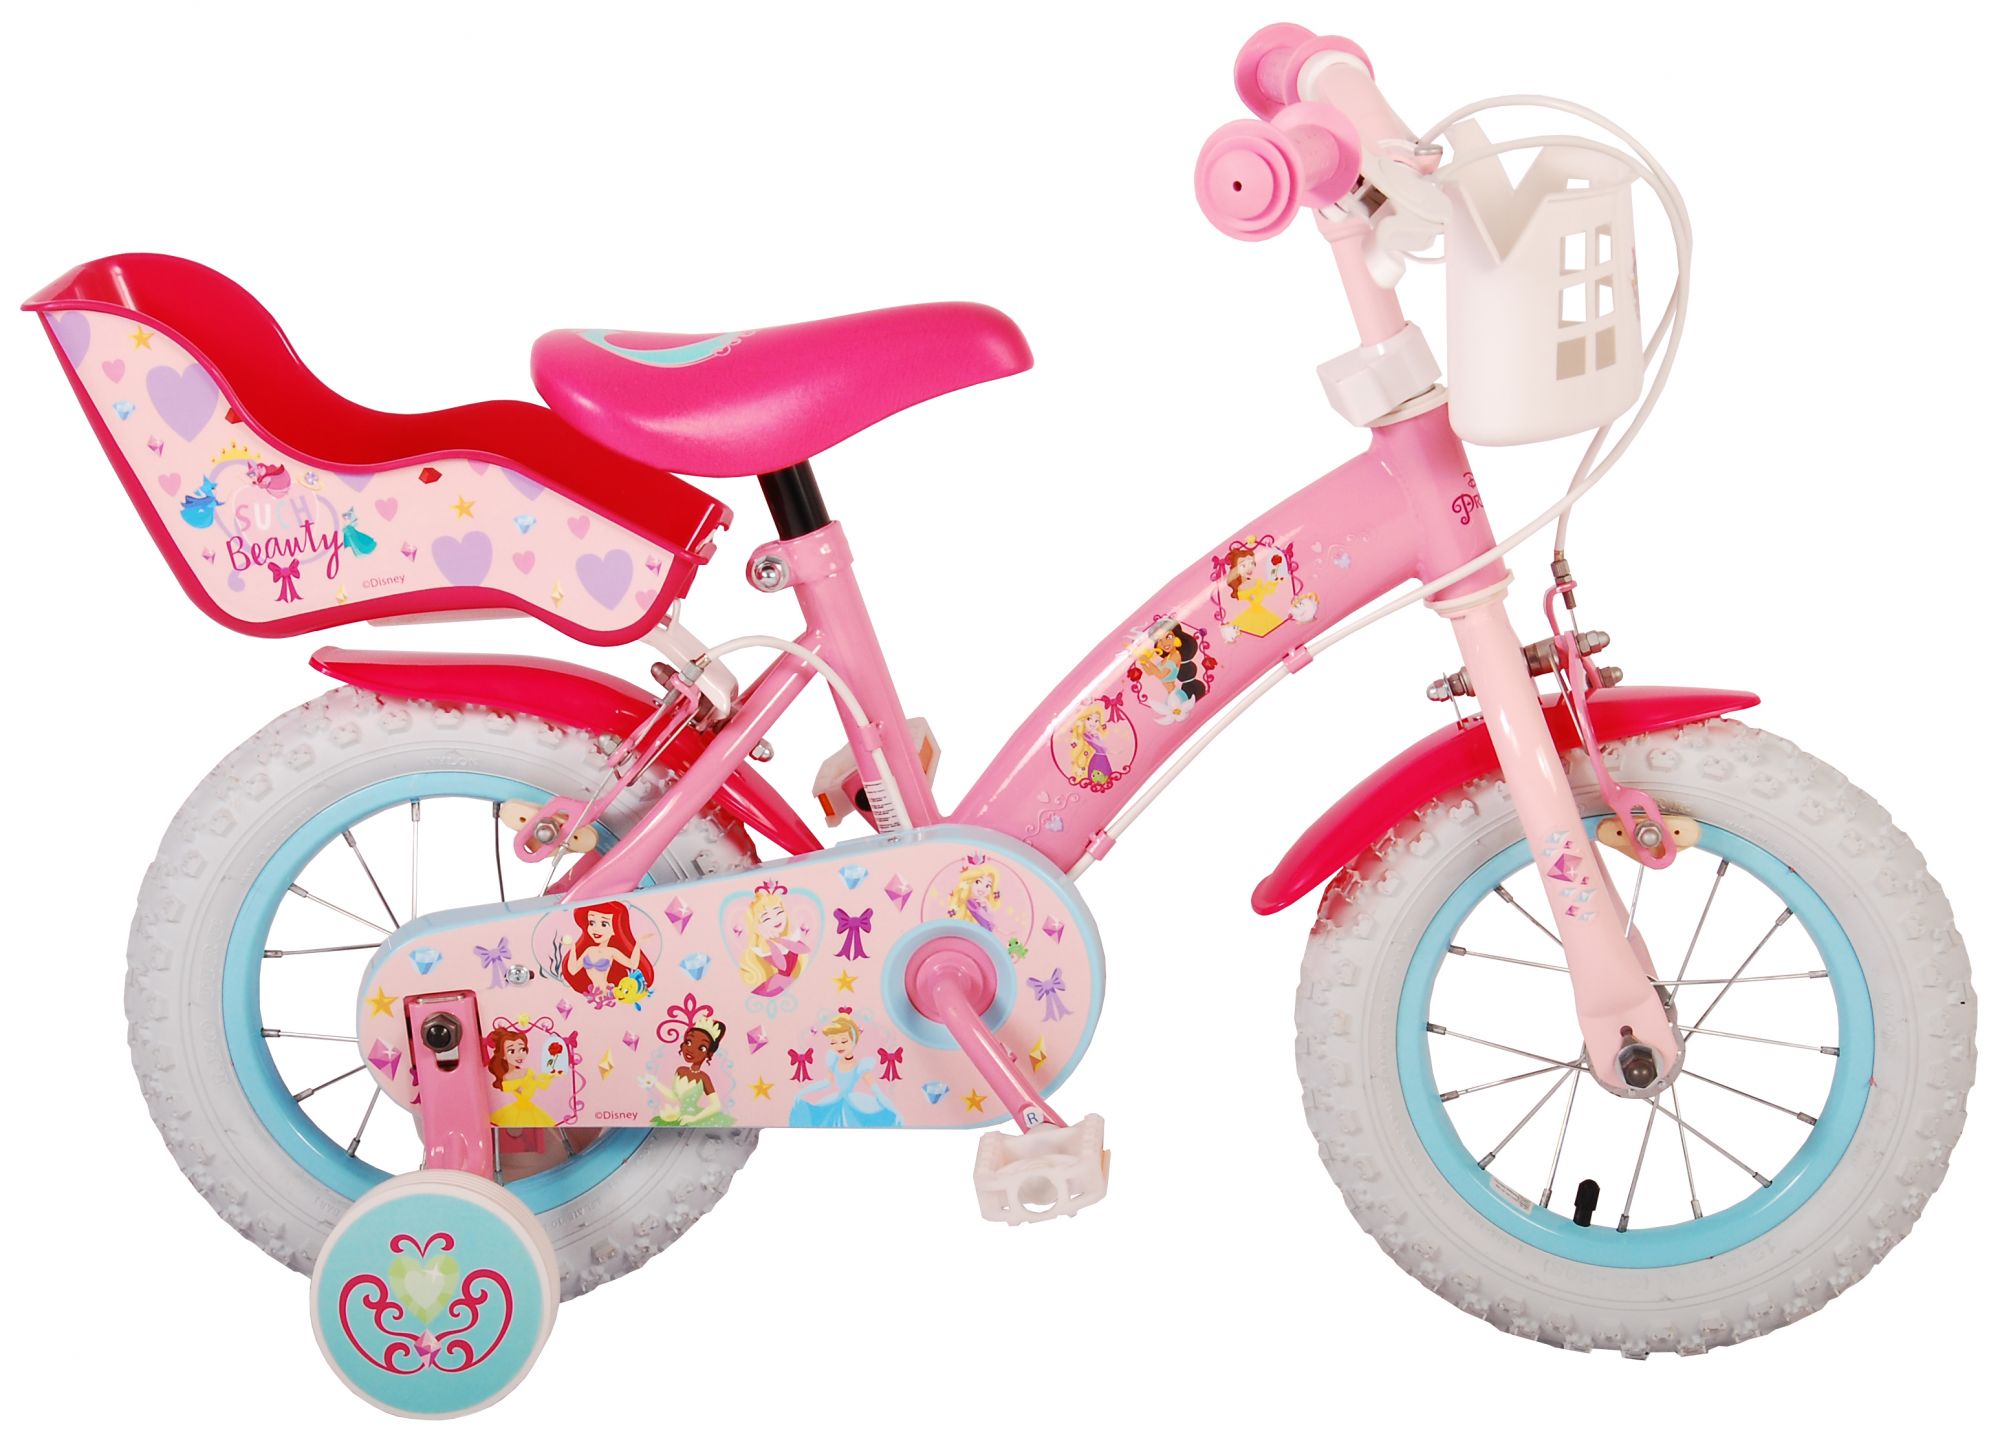 Meisjesfiets 12 inch :: Princess Kinderfiets - Meisjes - 12 - Roze - Twee Handremmen - Het grootste aanbod goedkope kinderfietsen Kinderfietsenoutlet.nl